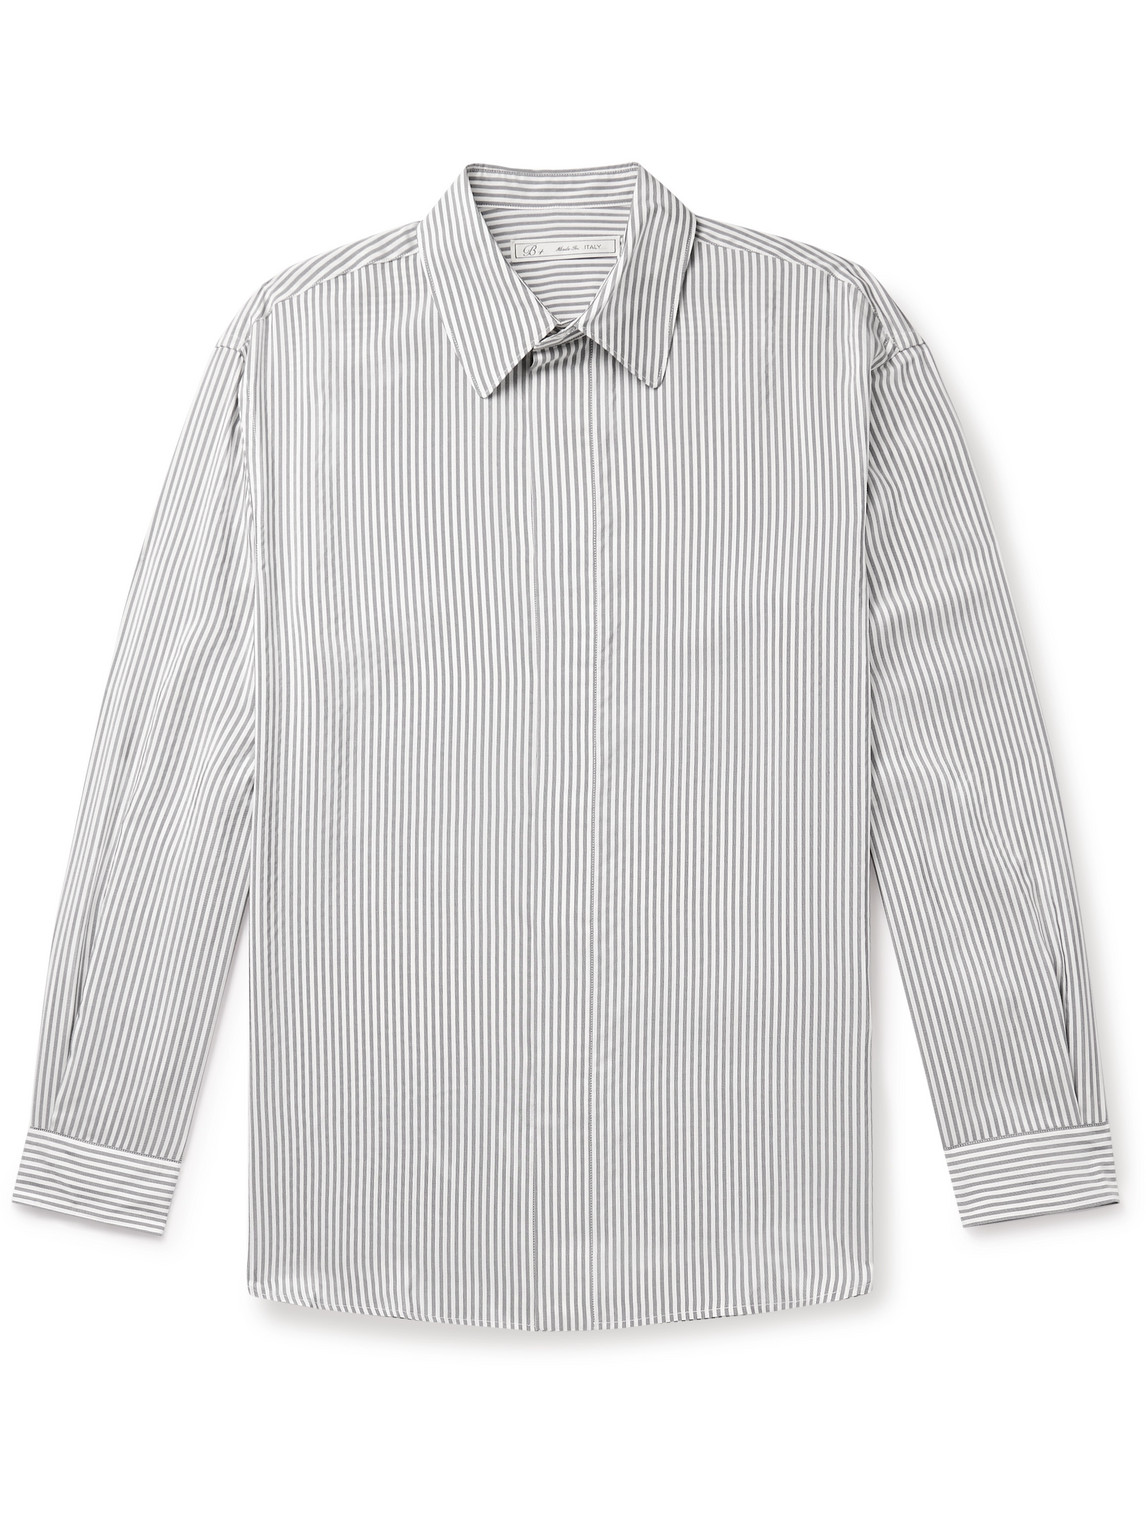 Umit Benan B+ Striped Silk Shirt In Gray